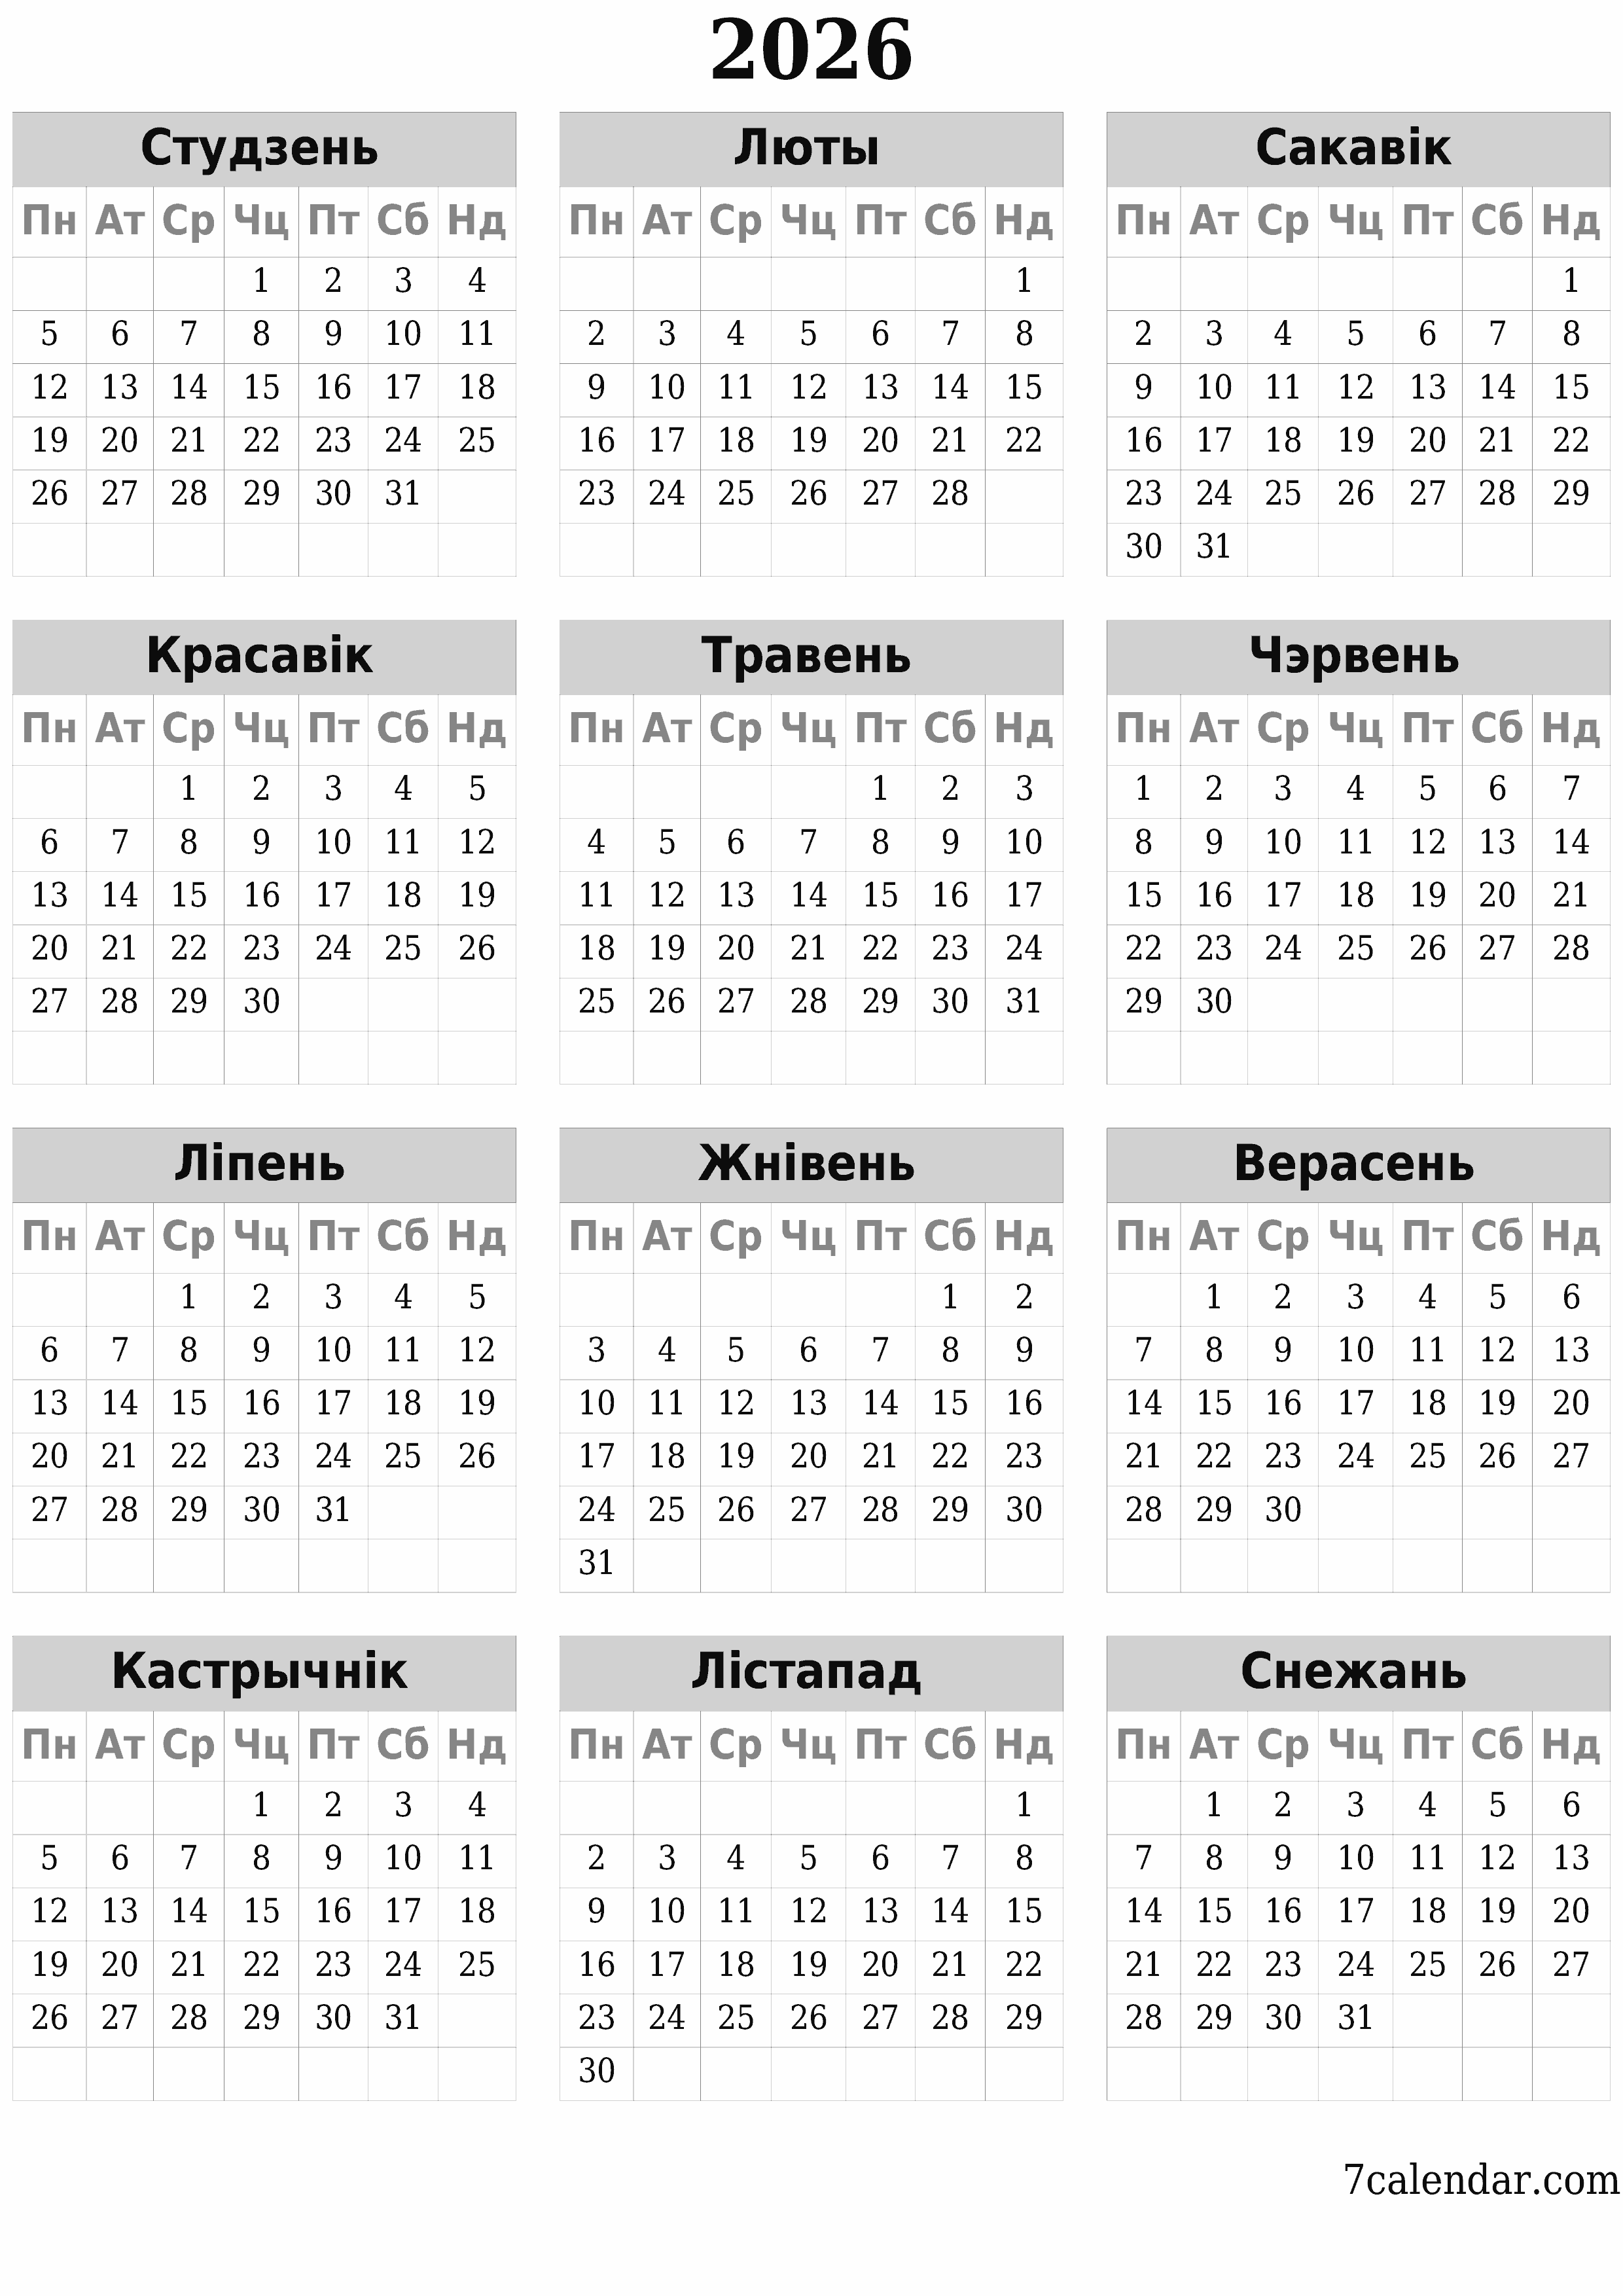  для друку насценны шаблон календара бясплатны вертыкальны Штогадовы каляндар Сакавік (Сак) 2026